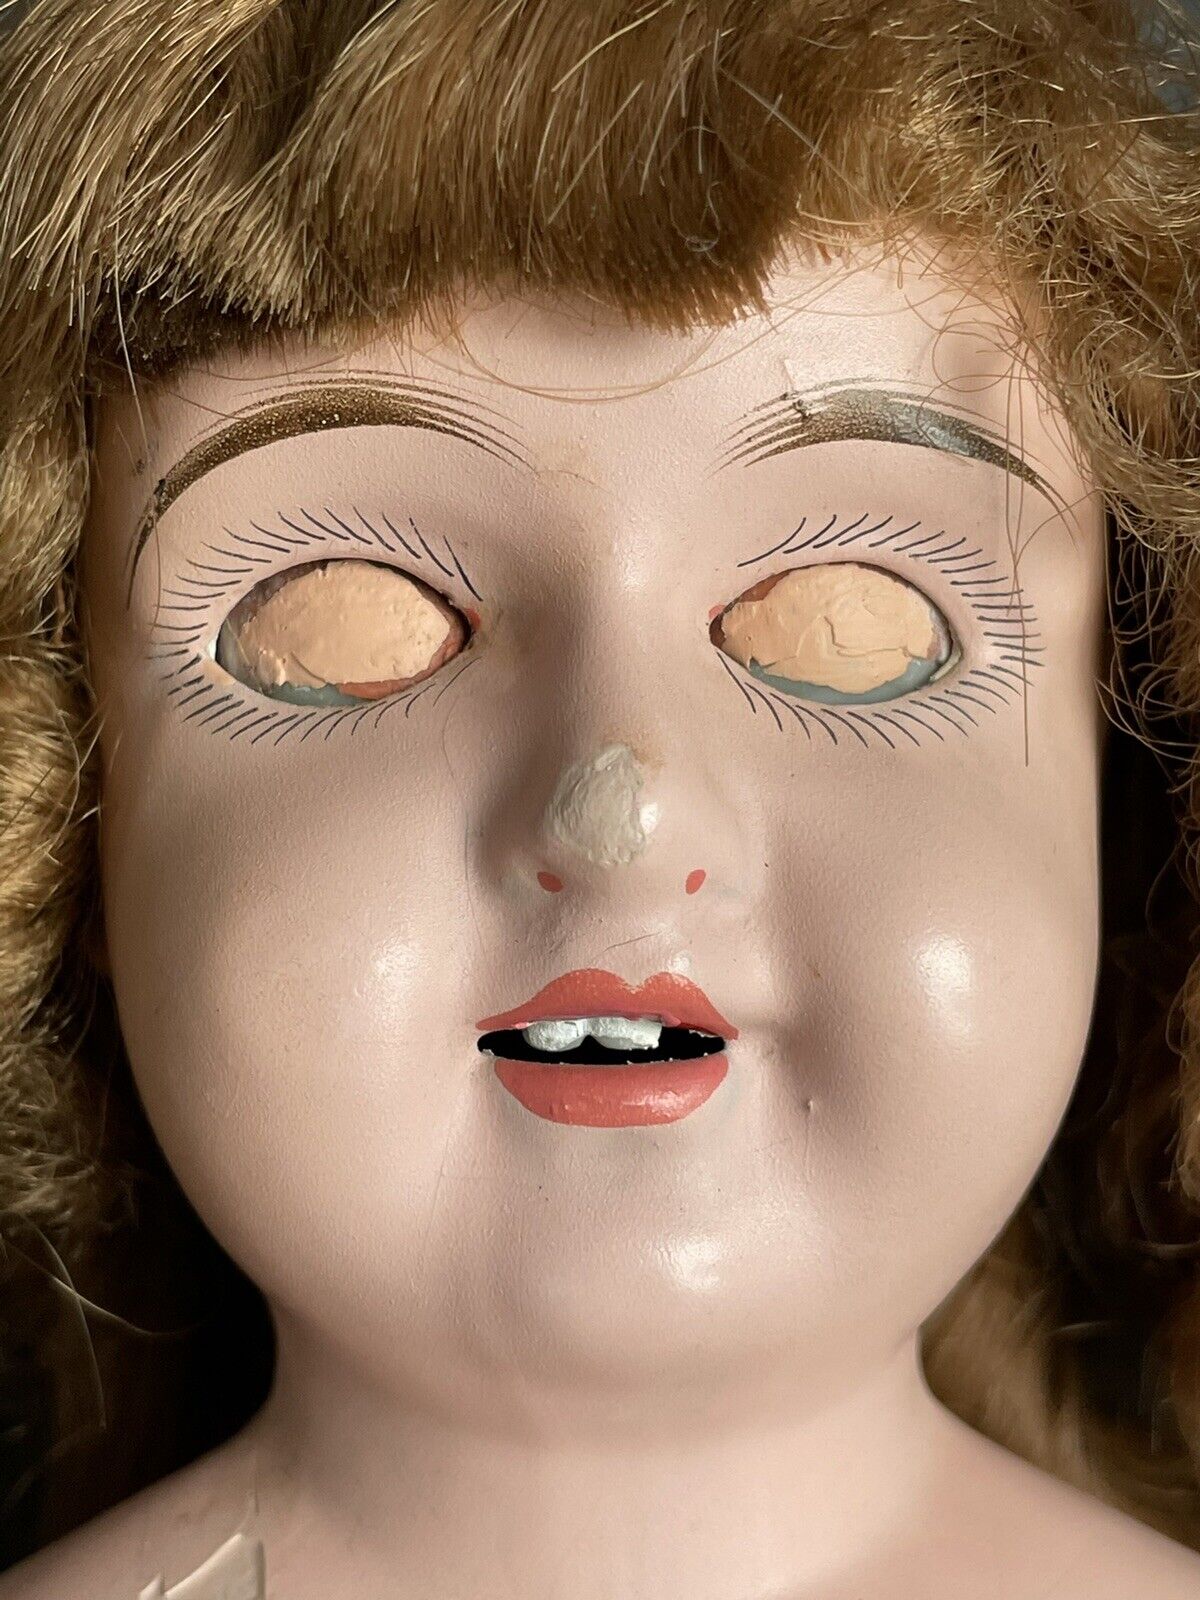 Antique German 22” Alfred Heller (?) Metal Head Glass Eyes Doll